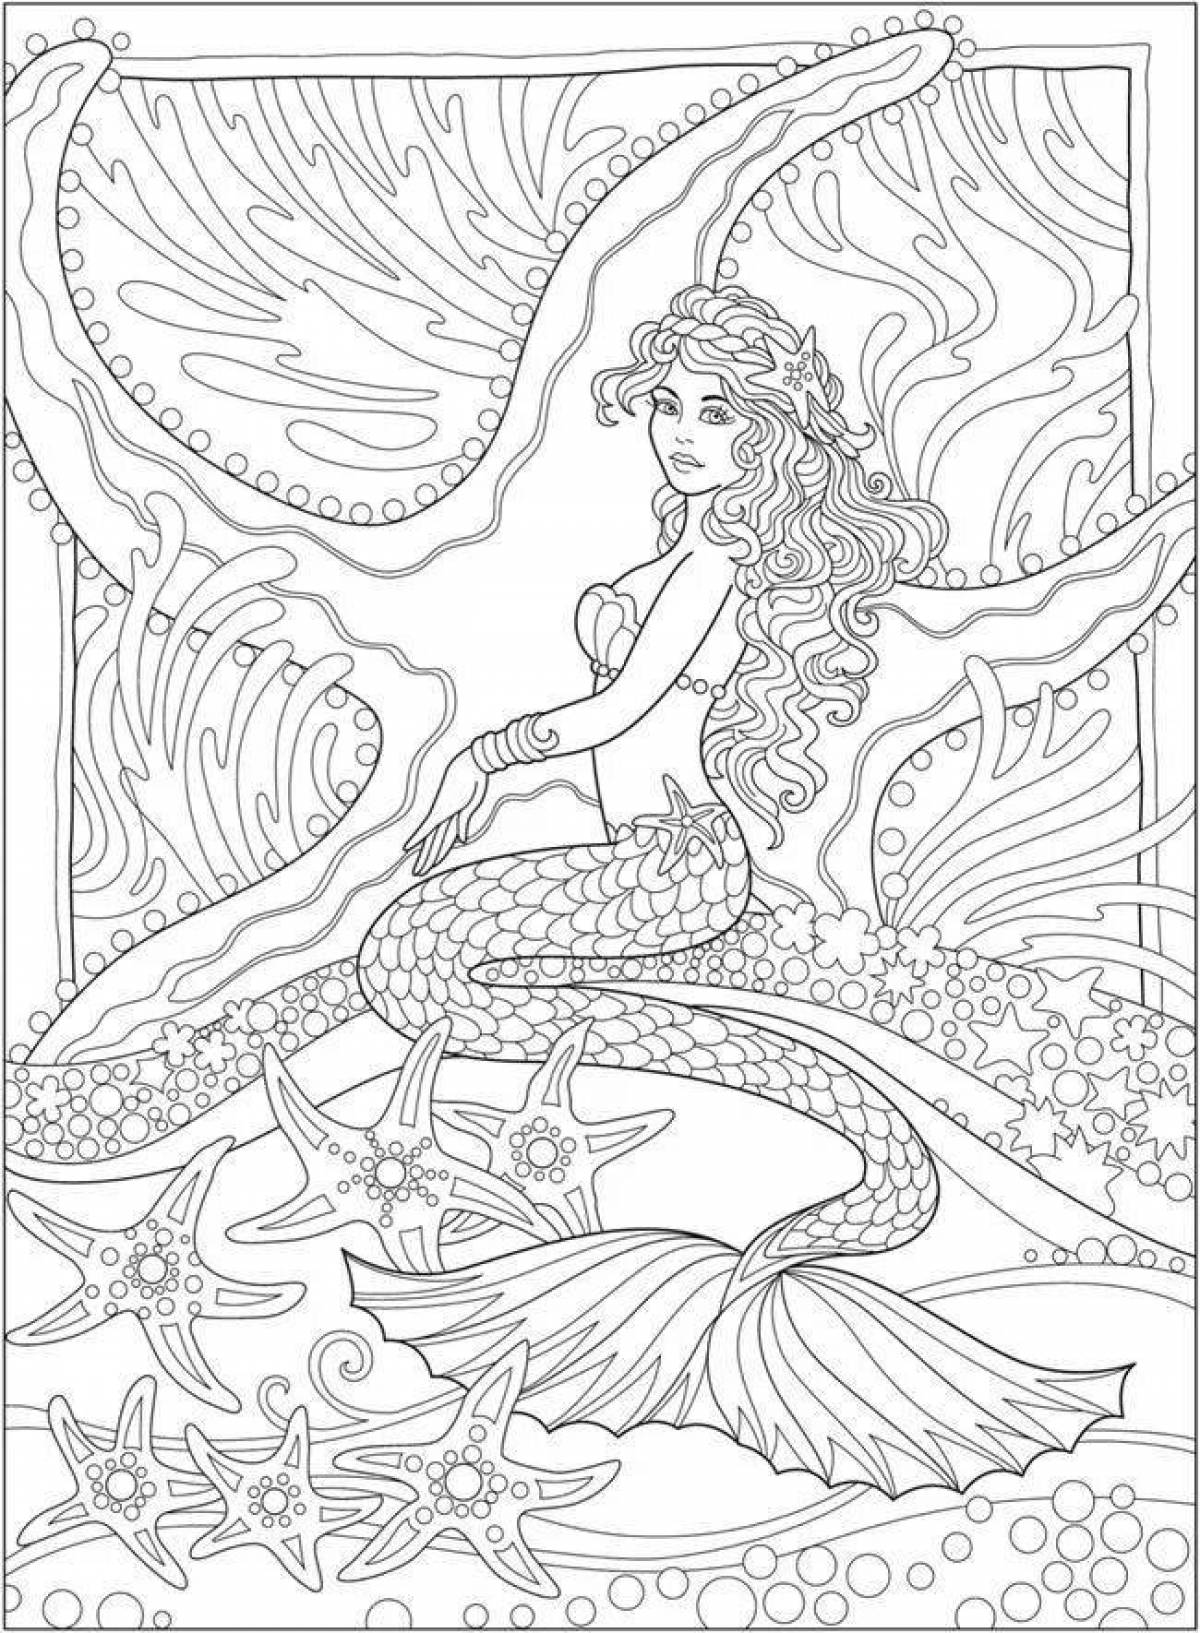 Elegant antistress mermaid coloring book